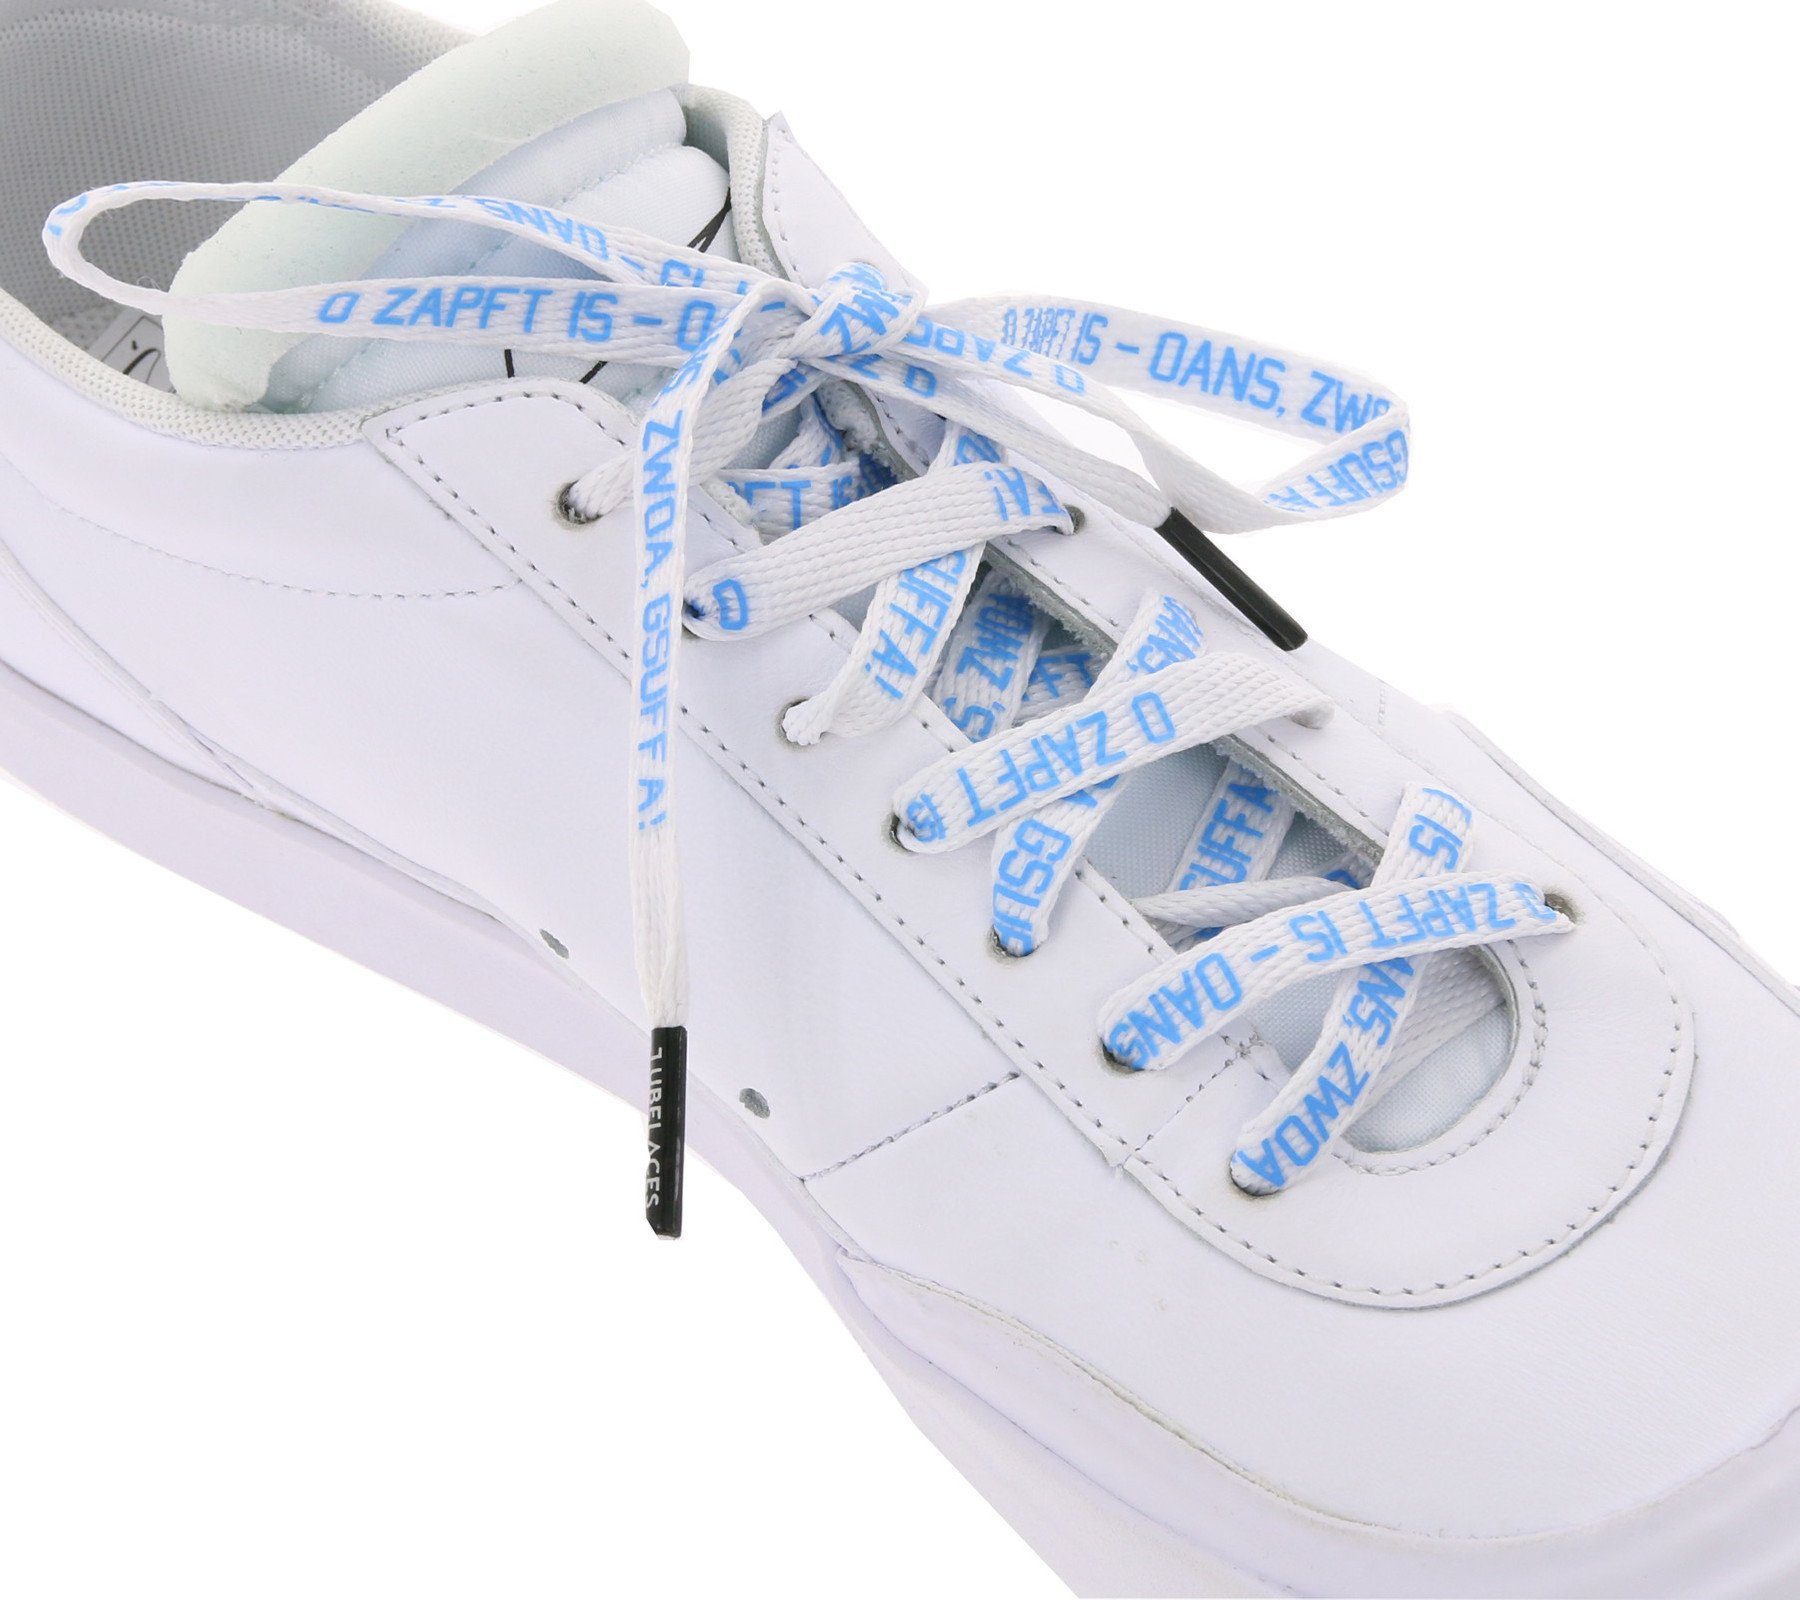 Tubelaces Schnürsenkel TubeLaces Schuhe Schnürbänder witzige Schnürsenkel Schuhbänder O´zapft is Weiß/Hellblau